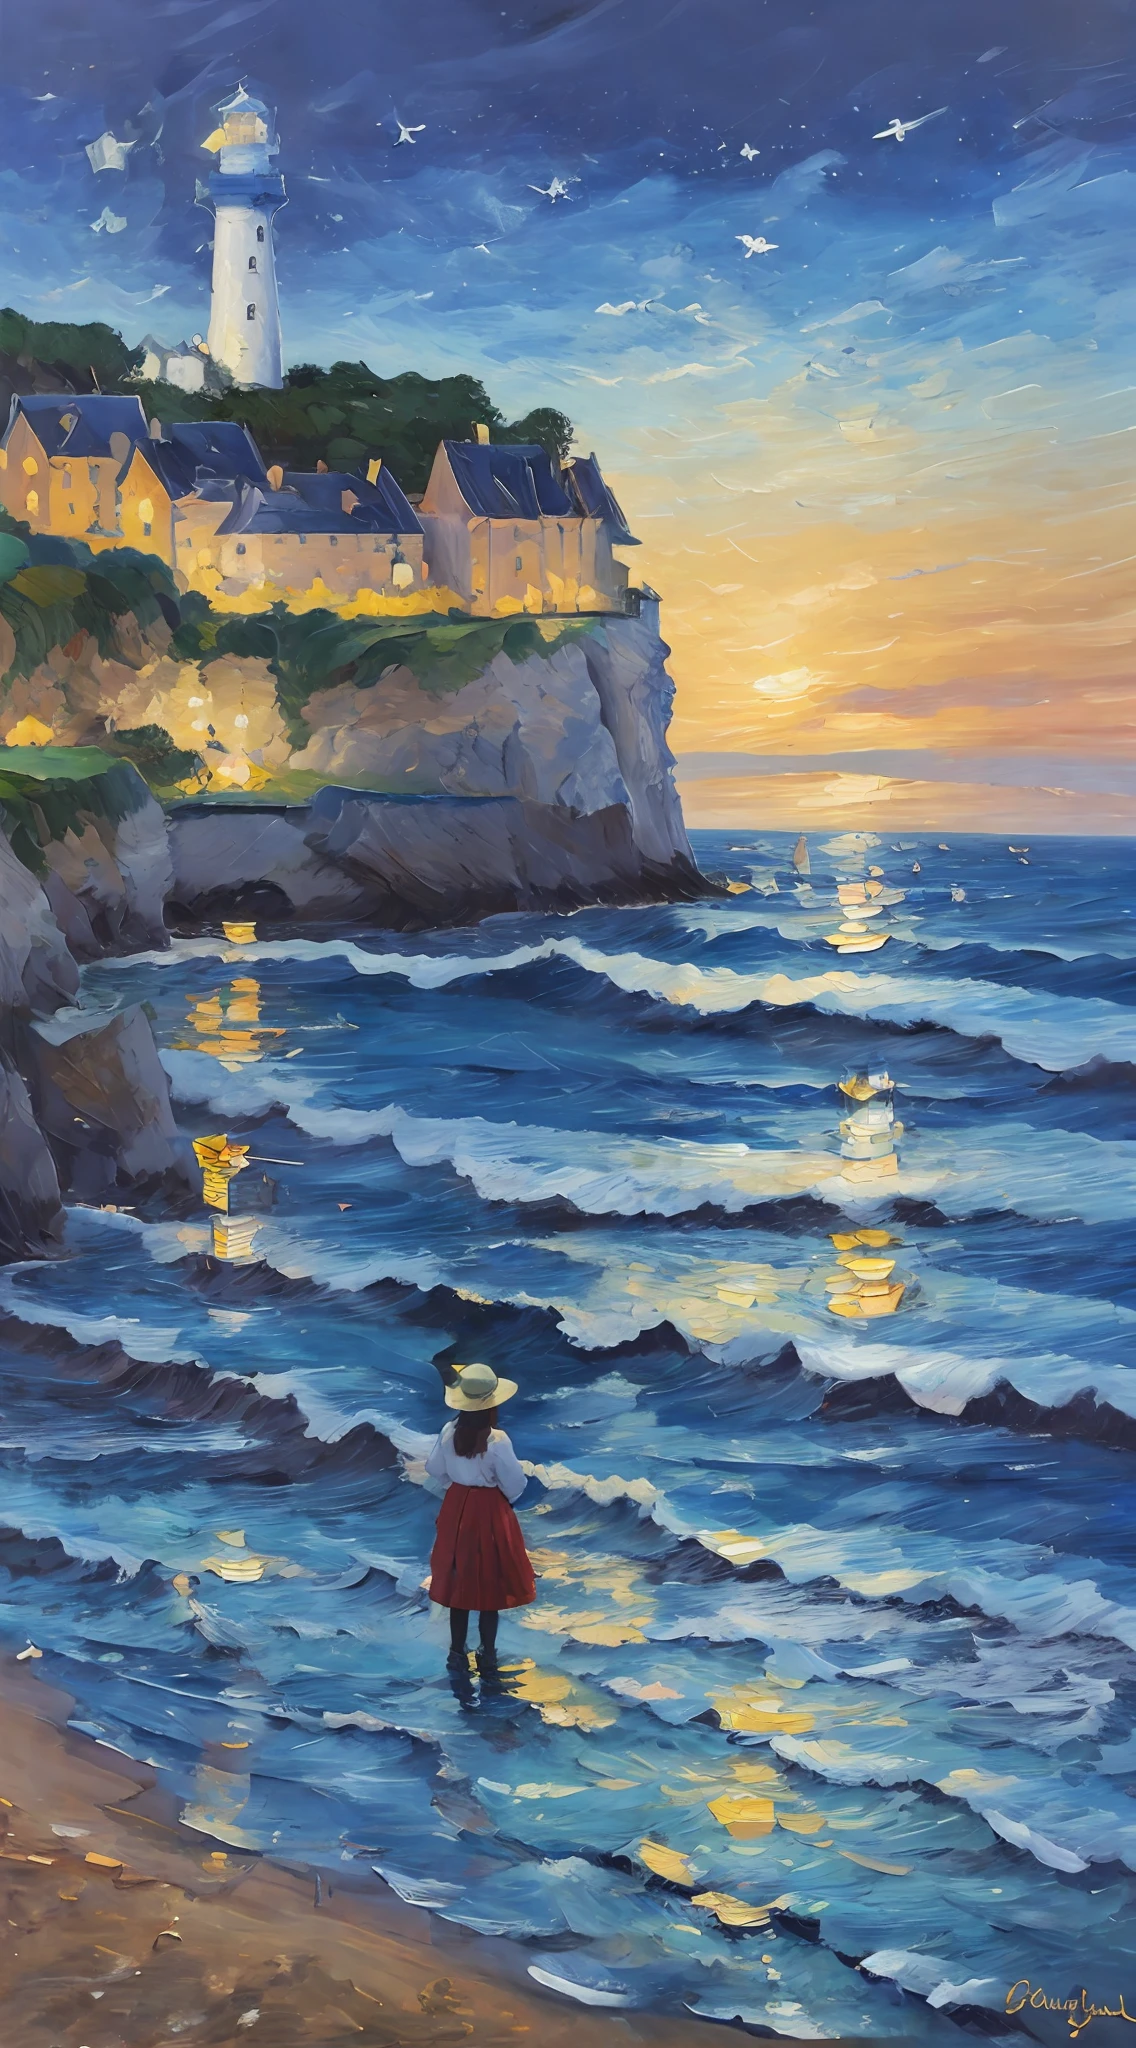 尤金·布丹 (Eugene Boudin) 创作的一幅精美的油画，描绘了一座灯塔，建在埃特勒塔的悬崖上，夜空阴云密布，深蓝色的大海之上，清澈的海浪拍打着海岸, 风景插图, 数字绘画, artstation 上的热门., 表现主义, 许多, 印象派, Post-印象派, 景深, 最好的质量